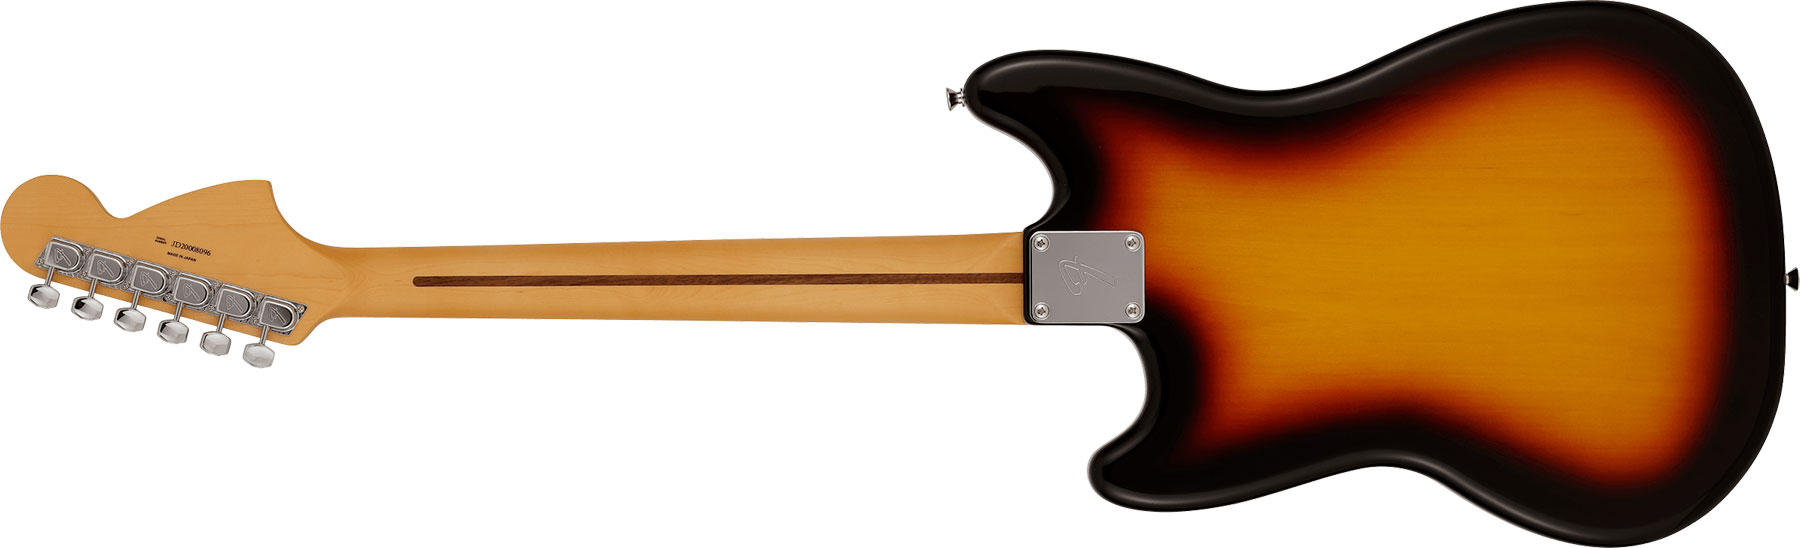 Fender Mustang Reverse Headstock Traditional Ltd Jap Hs Trem Rw - 3-color Sunburst - Str shape electric guitar - Variation 1